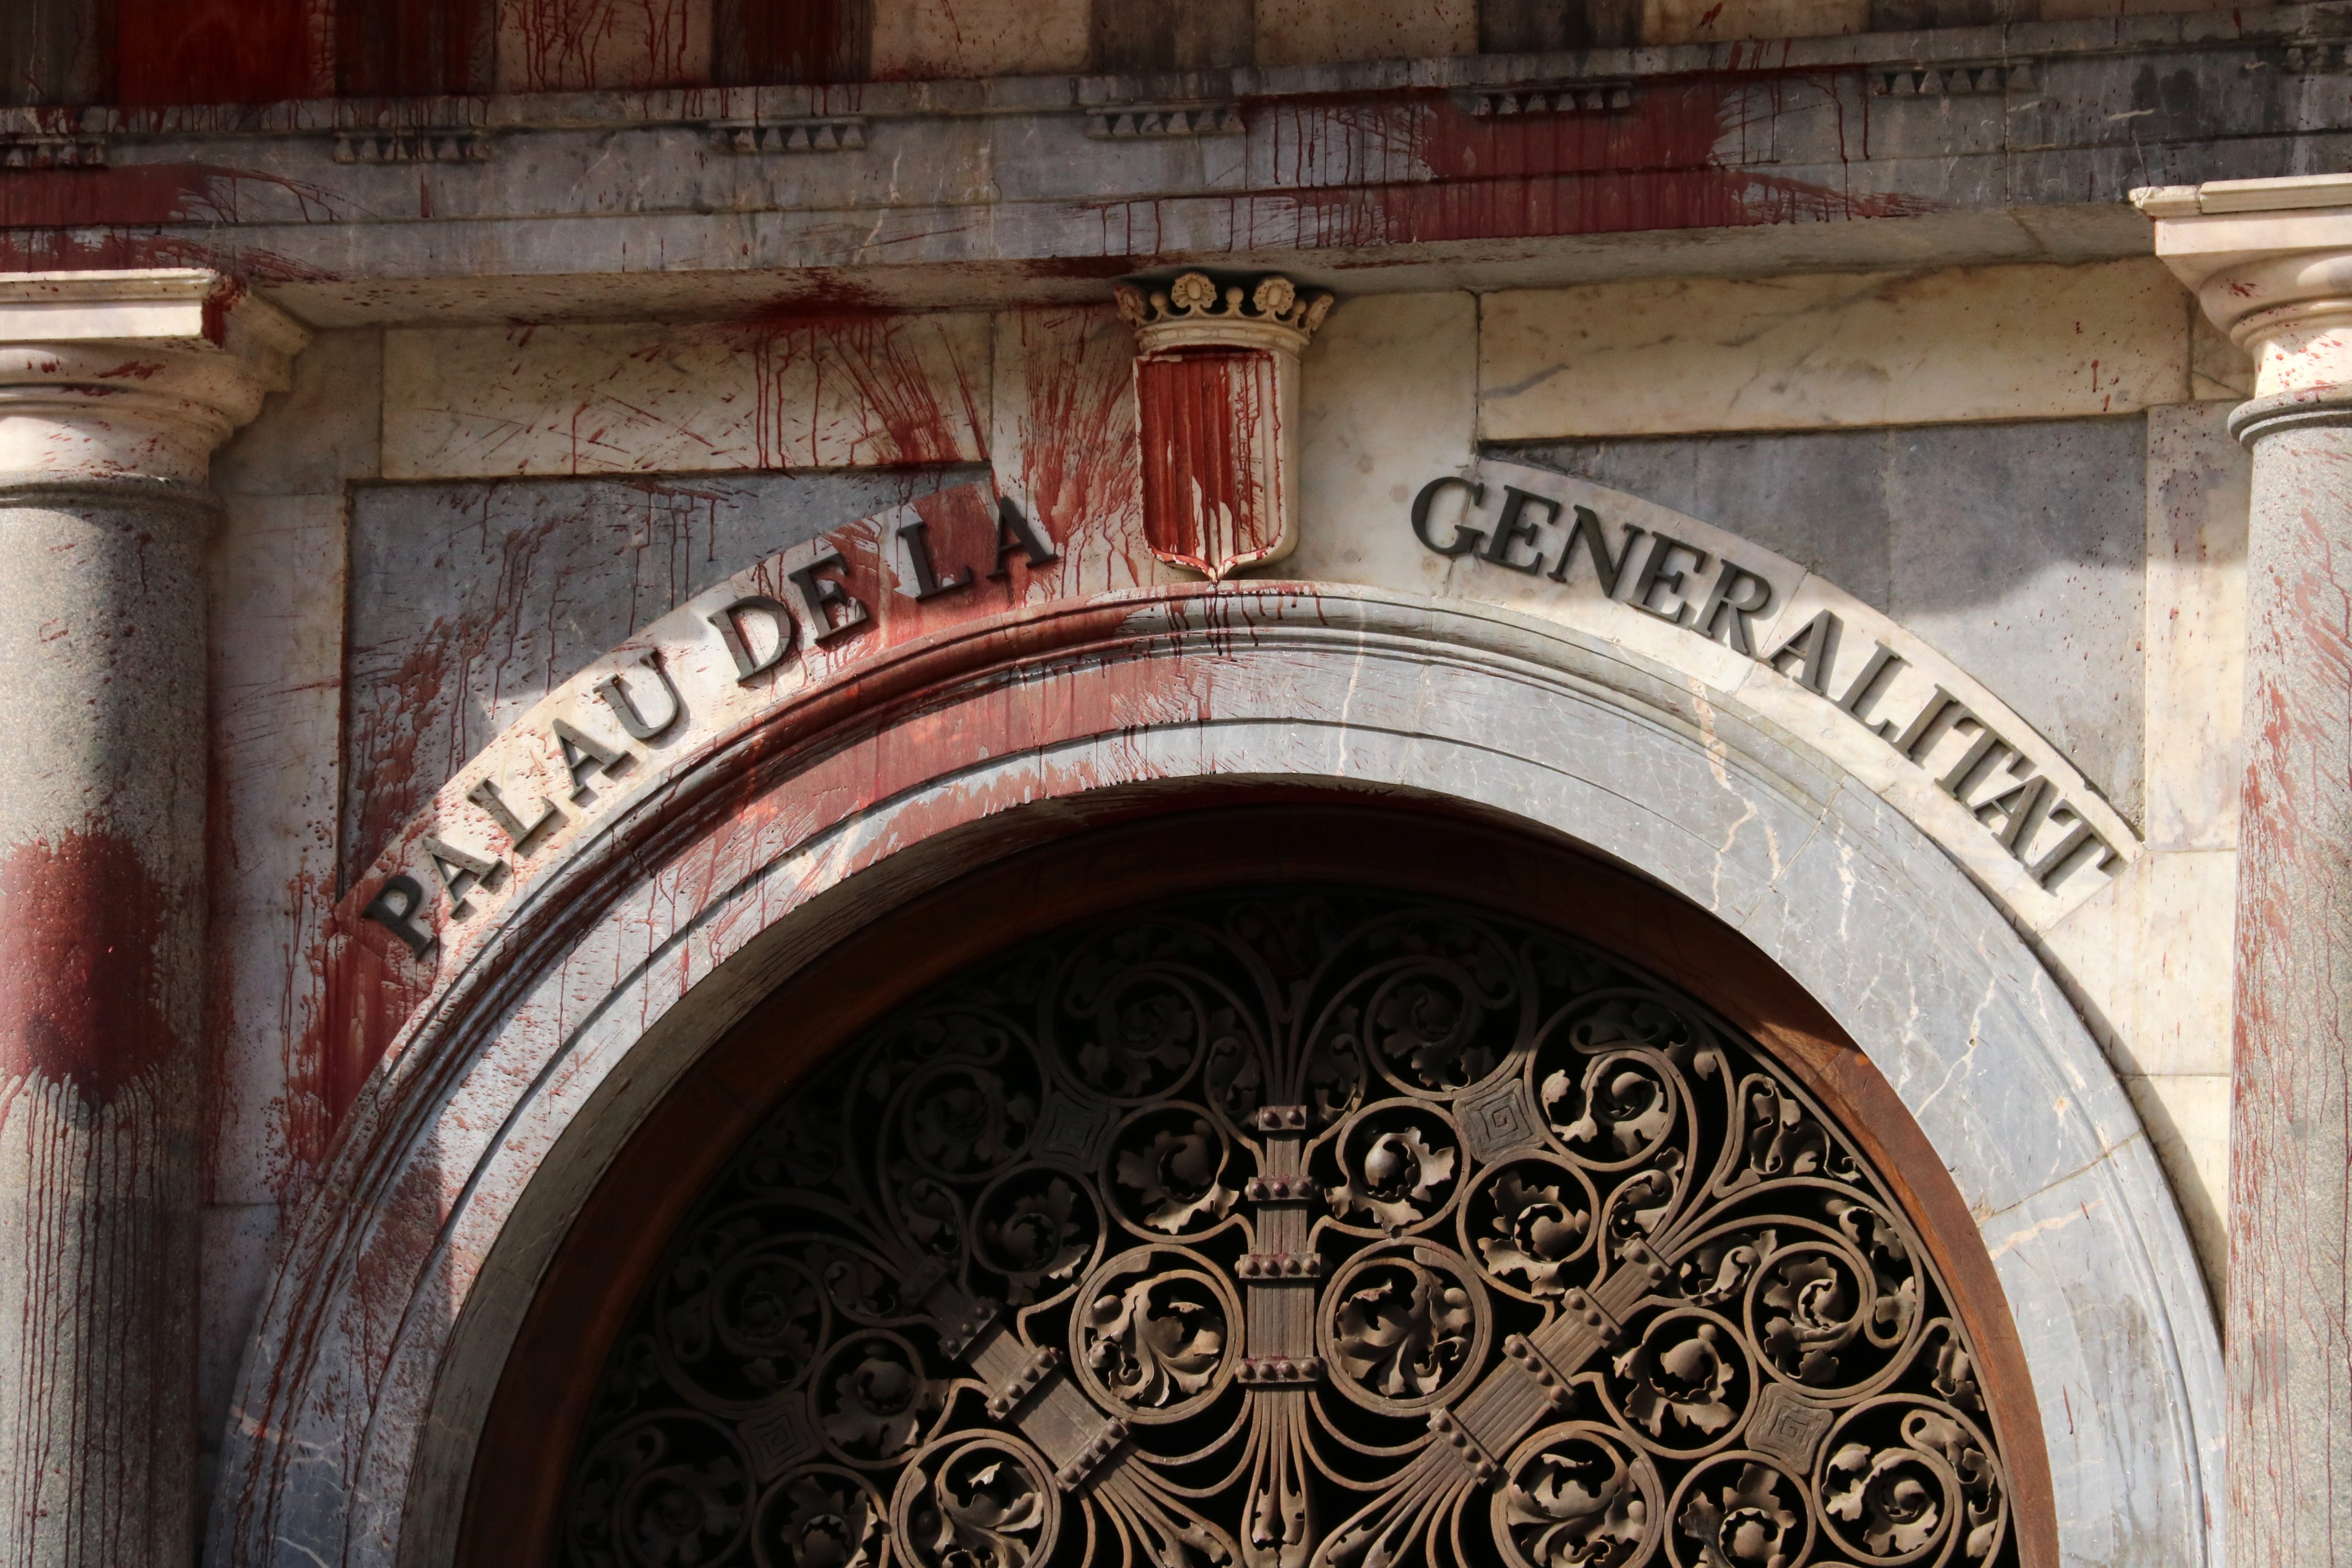 ¿Crees que tendría que haber más vigilancia en el Palau de la Generalitat?